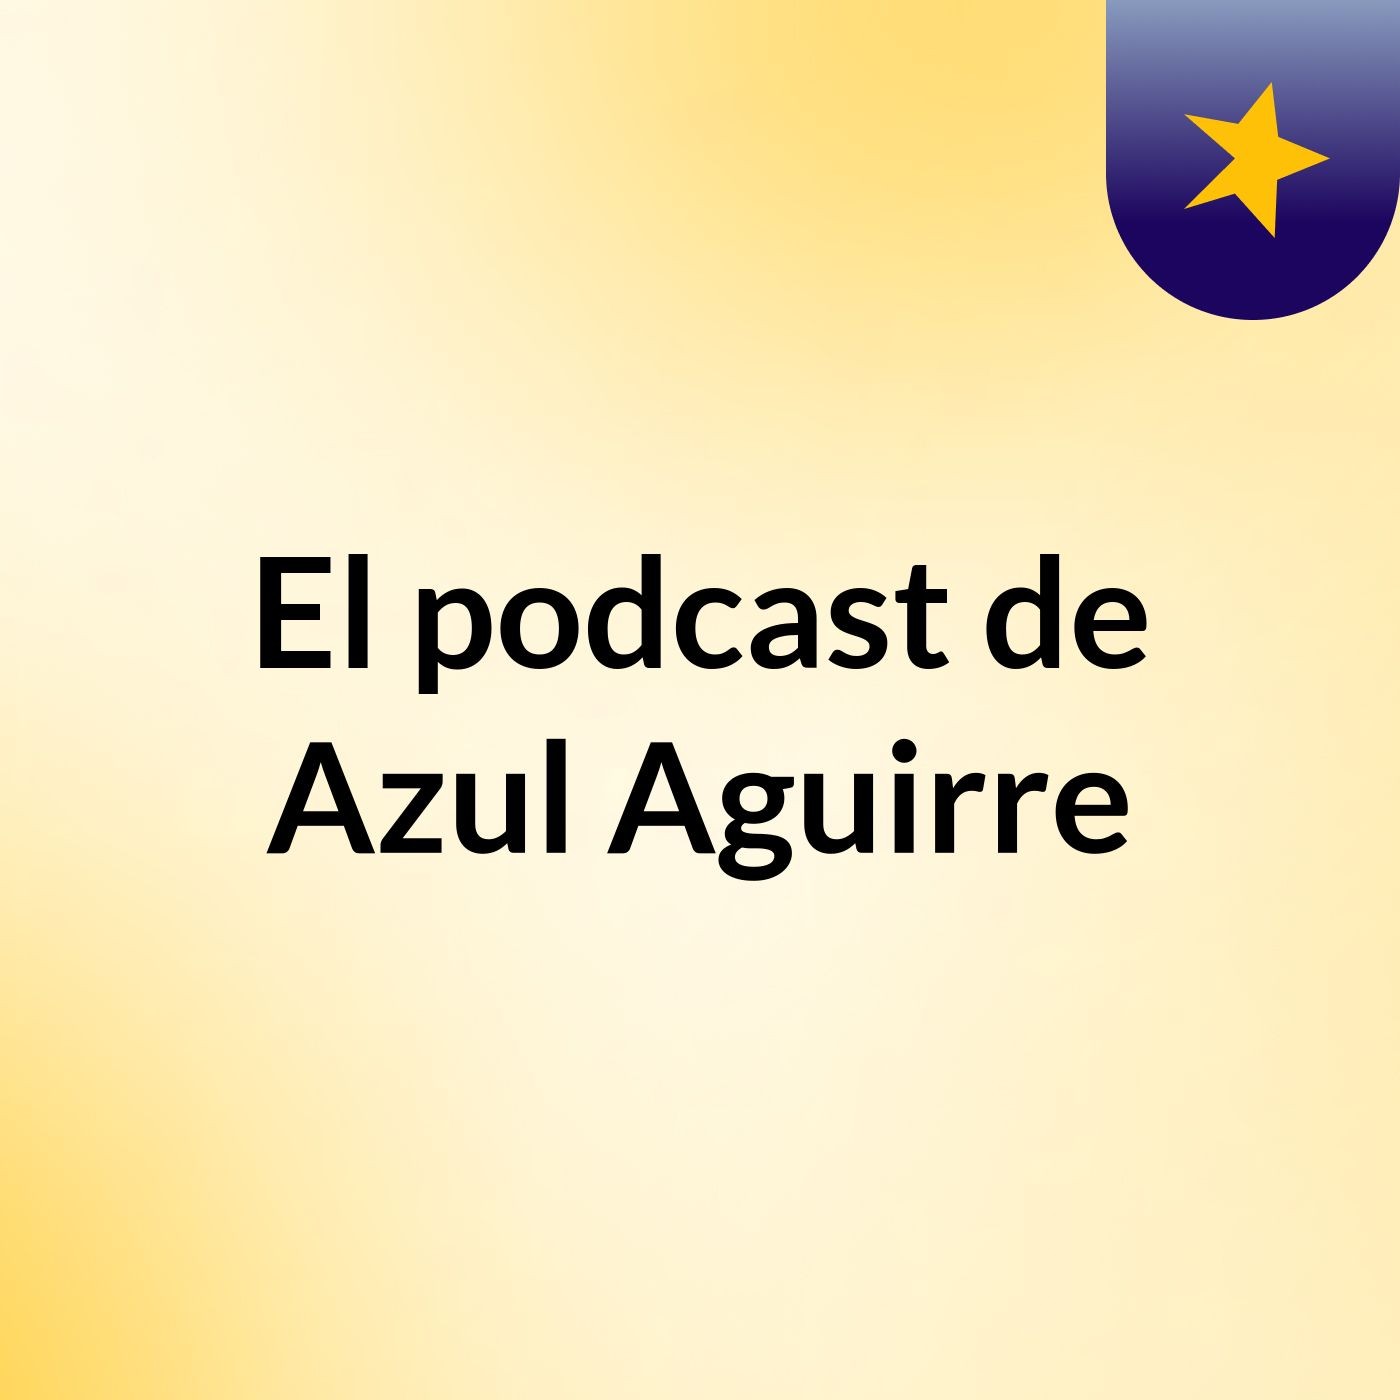 El podcast de Azul Aguirre